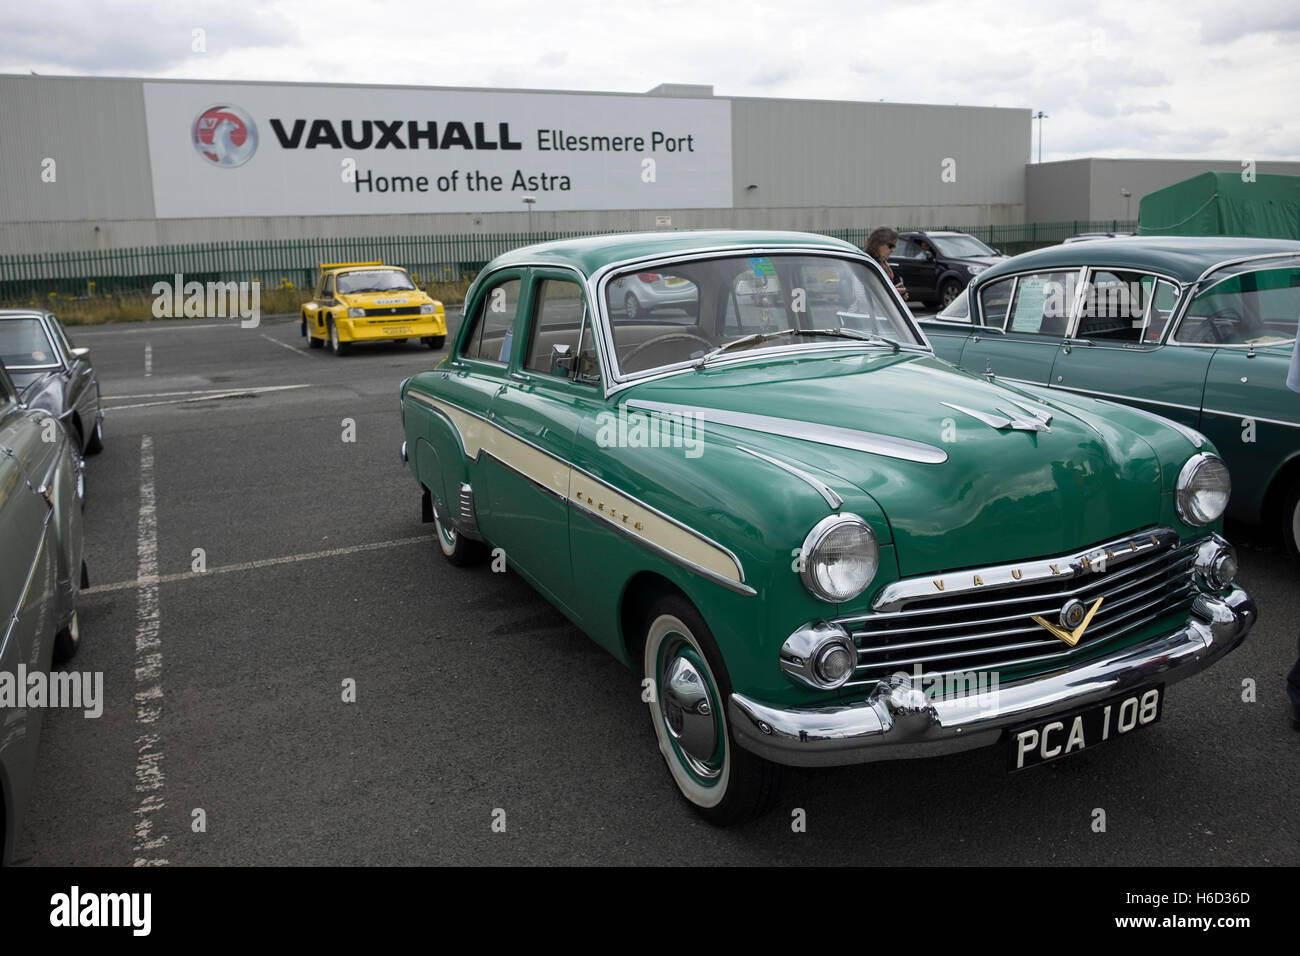 Coche Vauxhall clásico Foto de stock